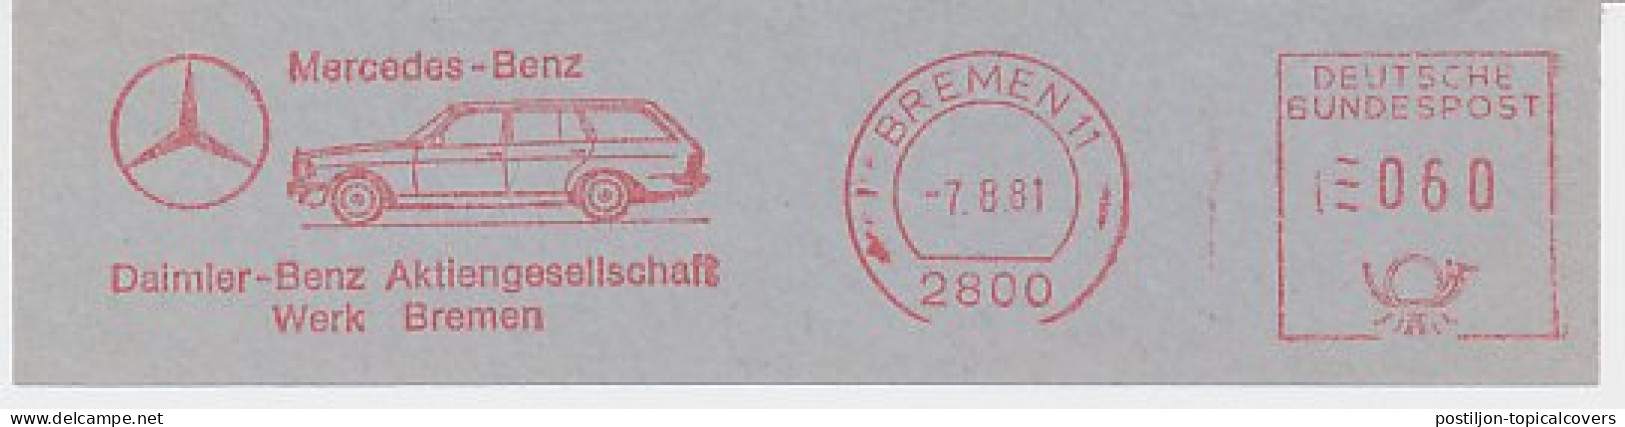 Meter Cut Germany 1981 Car - Mercedes Benz - Automobili